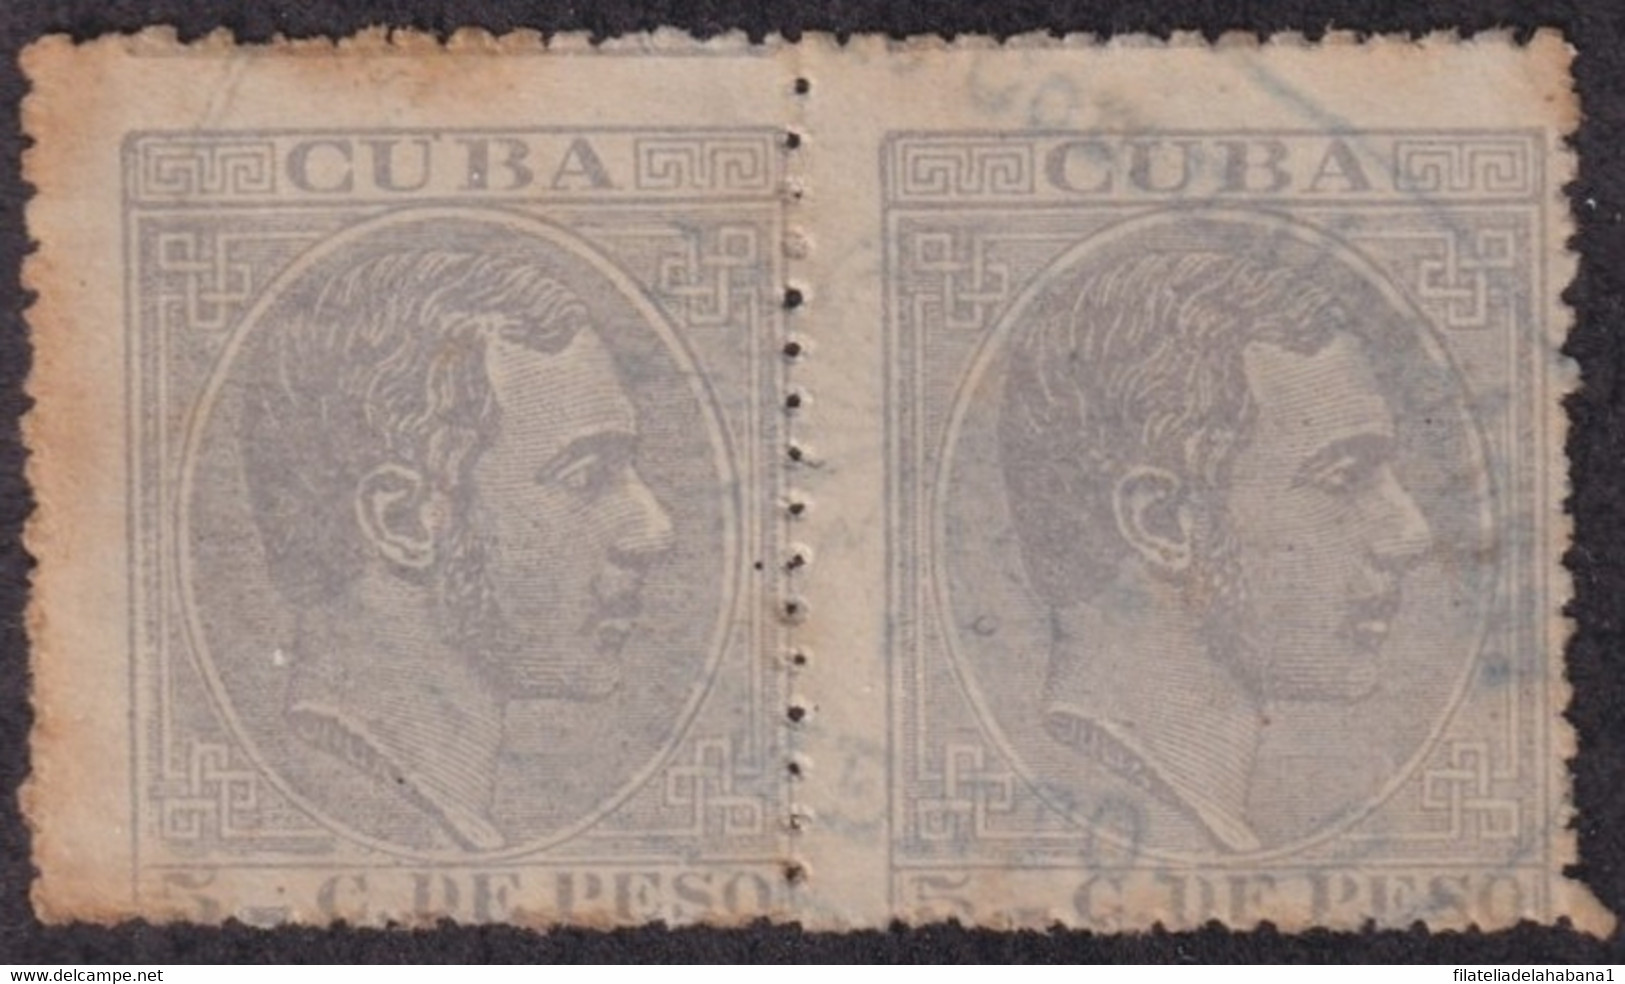 1884-307 CUBA ESPAÑA SPAIN ANTILLAS 1884 ALFONSO XII 5c TELEGRAPH CANCEL. - Prefilatelia